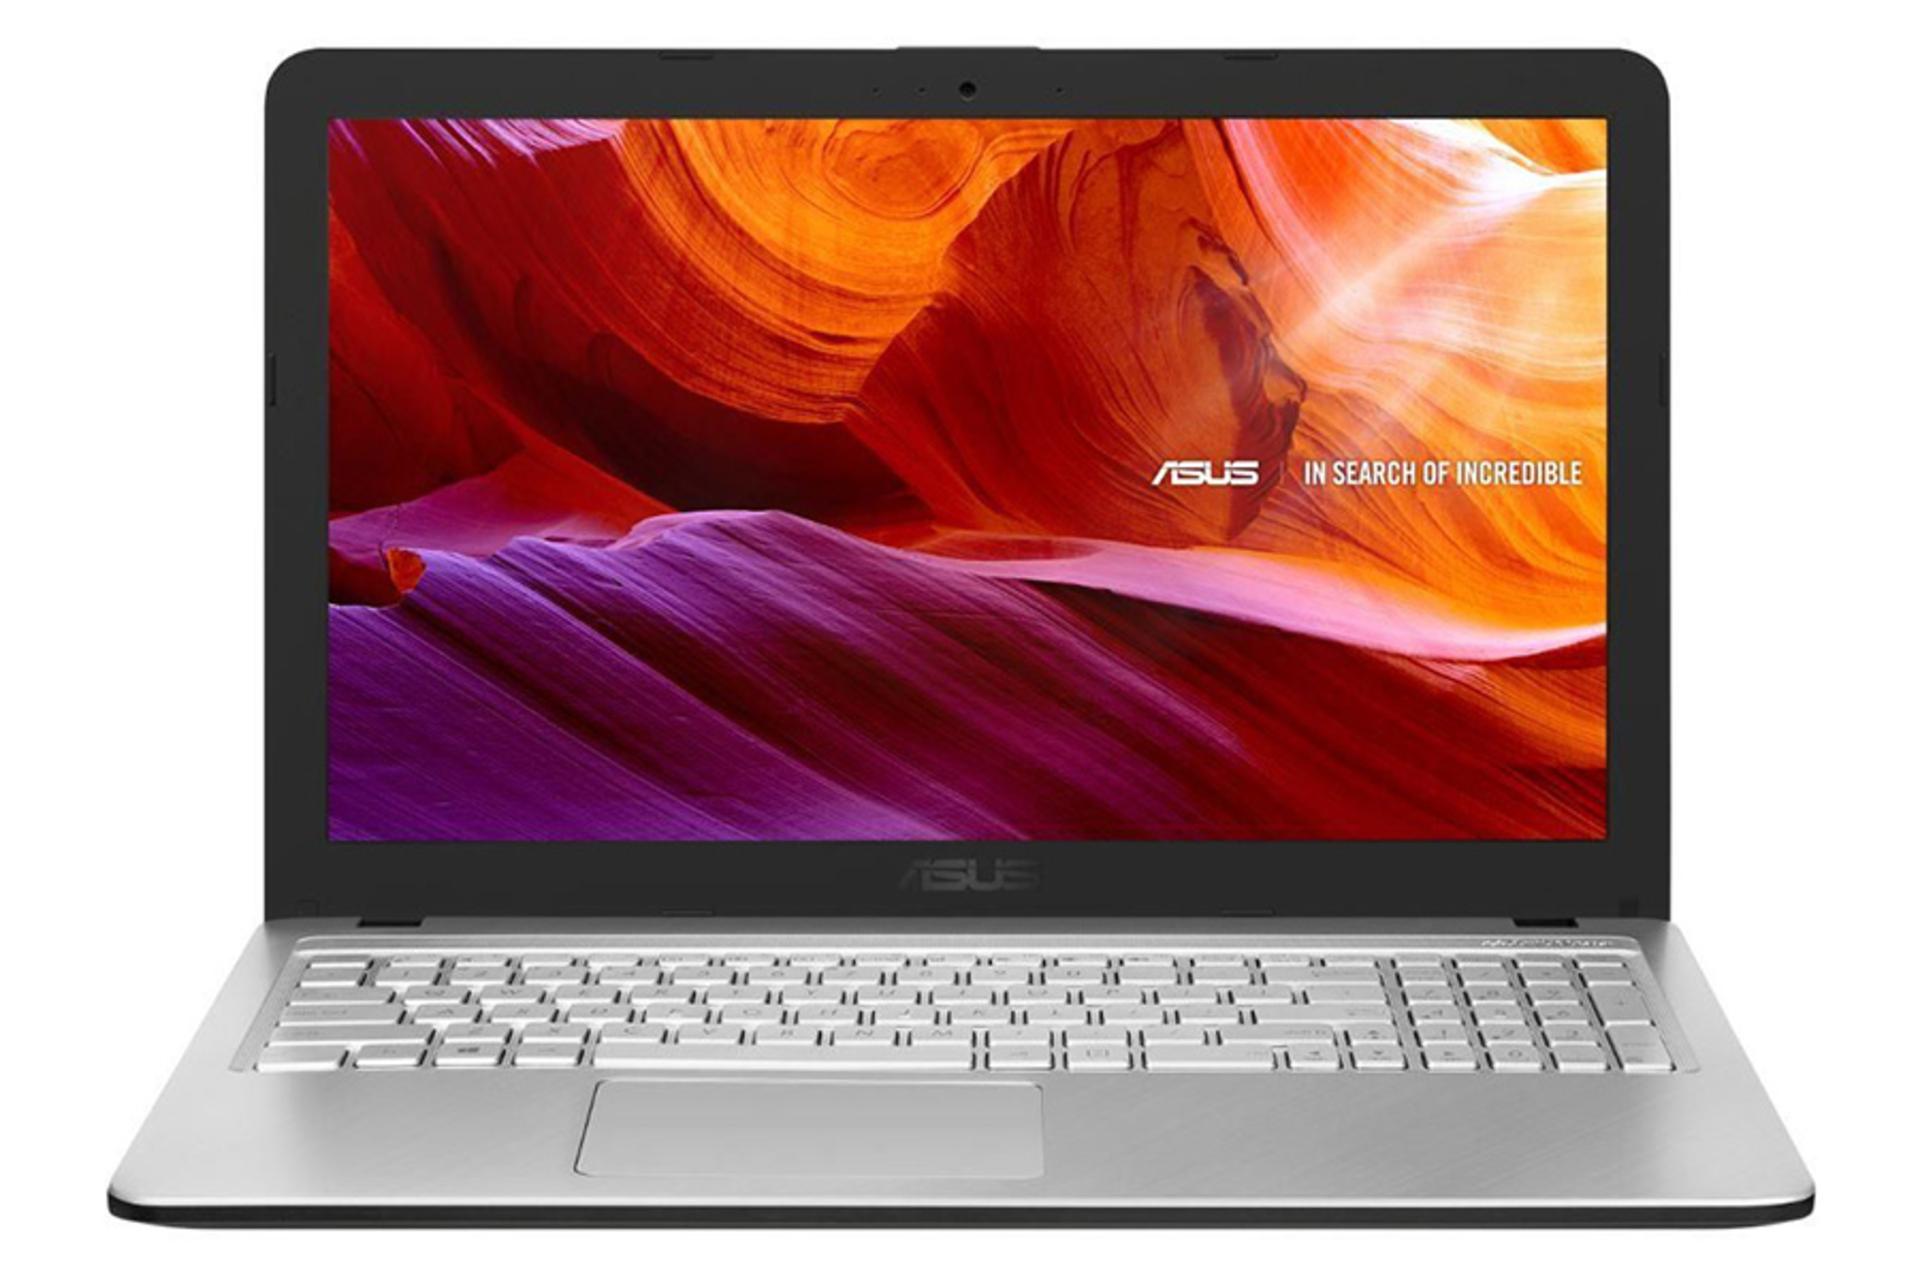 نمای جلو لپ تاپ ایسوس X543BA رنگ نقره ای با صفحه روشن